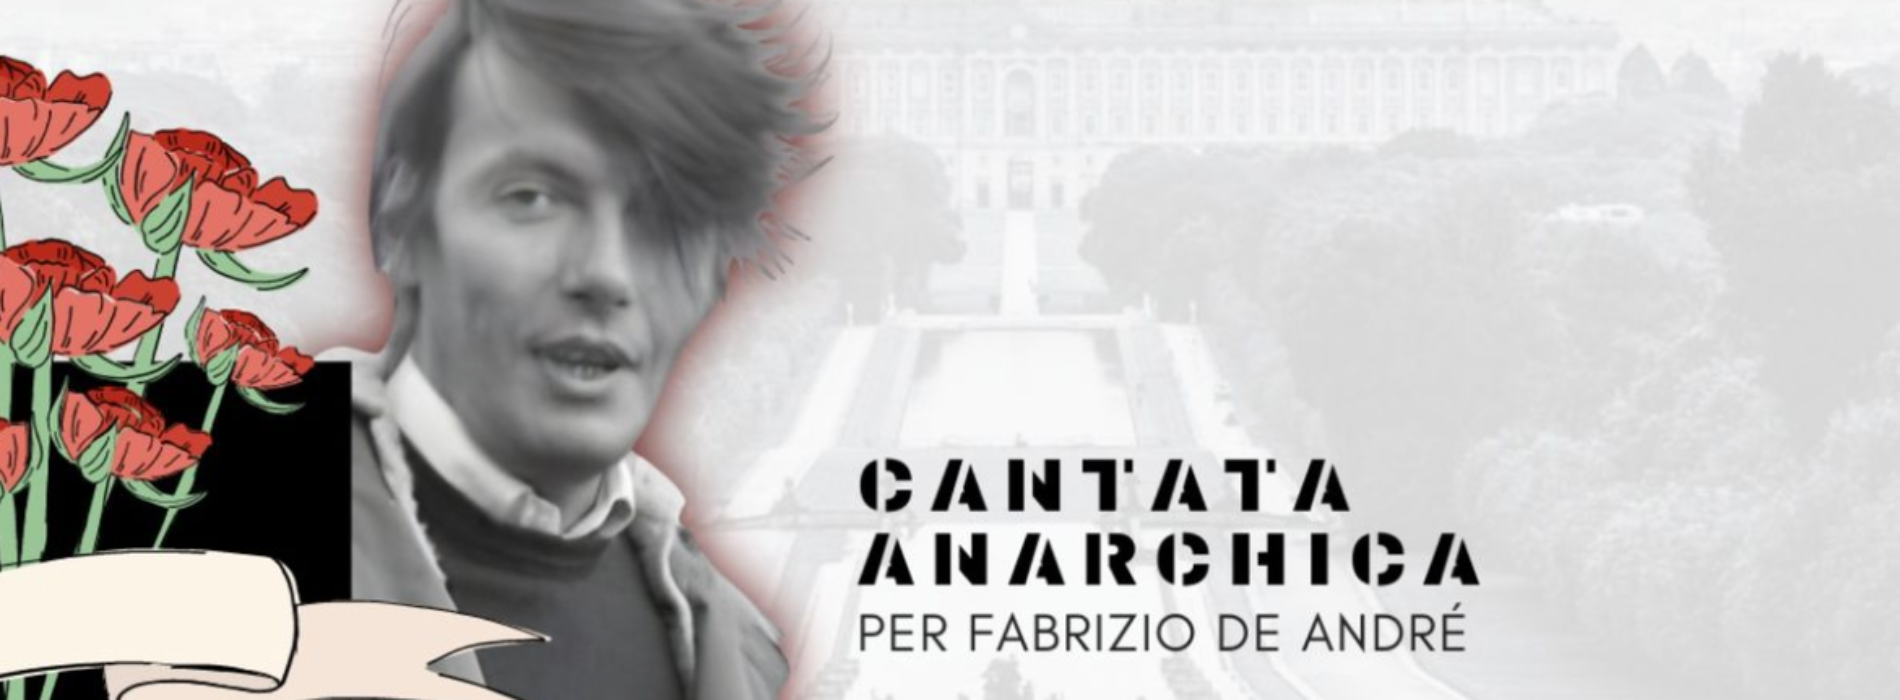 Piazza Carlo di Borbone. Cantata Anarchica per Fabrizio De Andrè